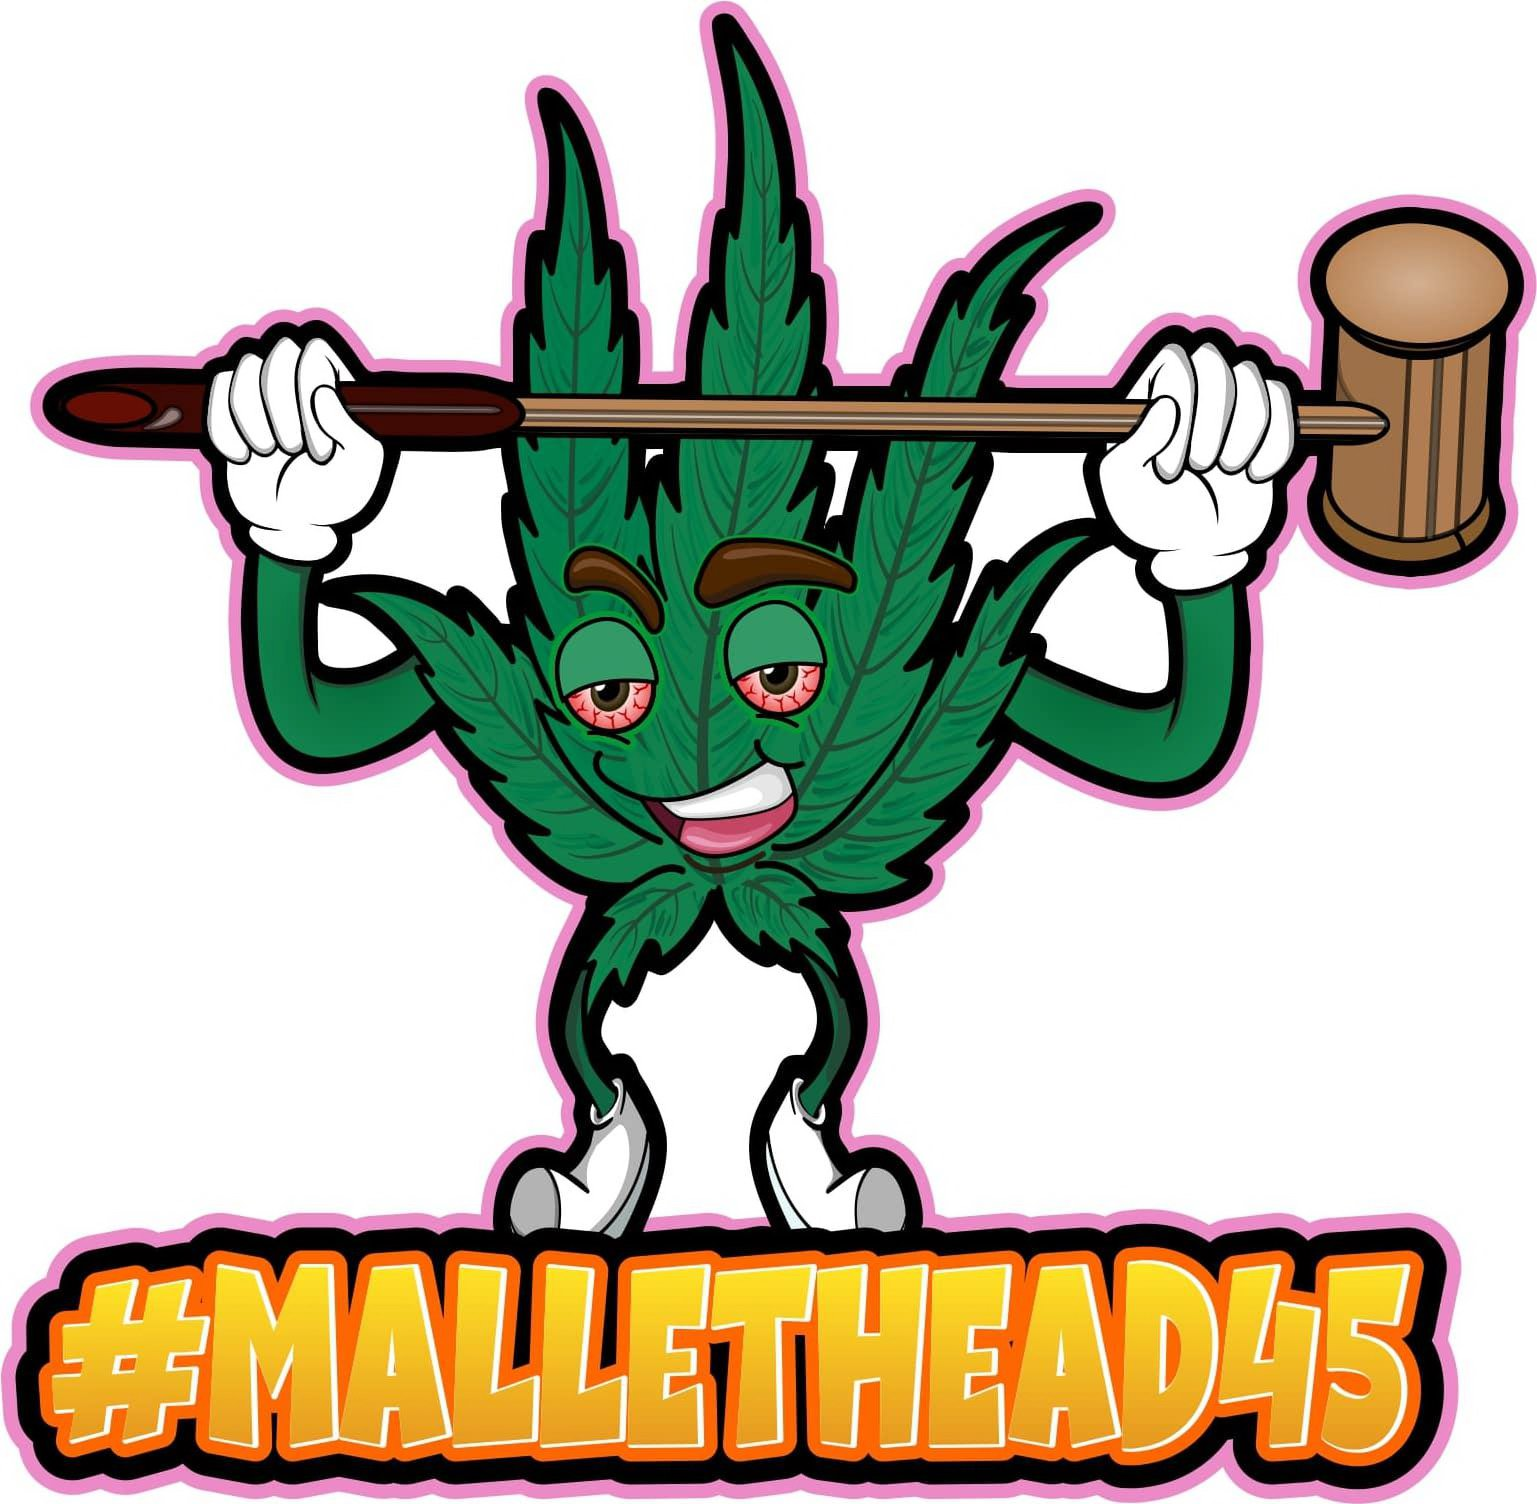 Trademark Logo #MALLETHEAD45